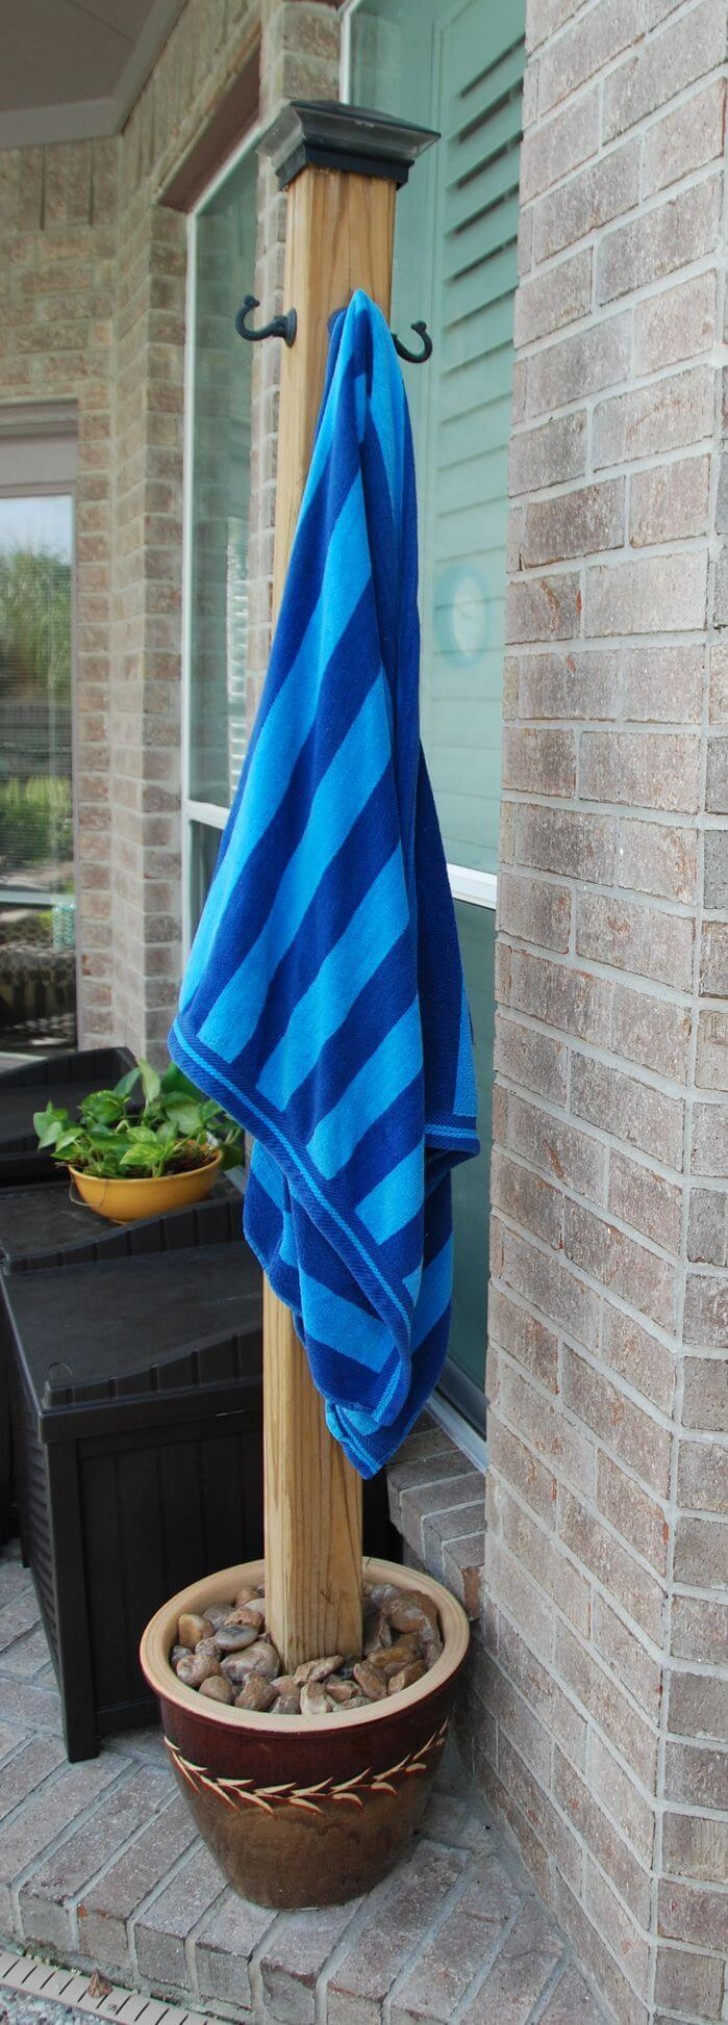 3. Een houten handdoekhanger direct bij het zwembad: elegant en essentieel!